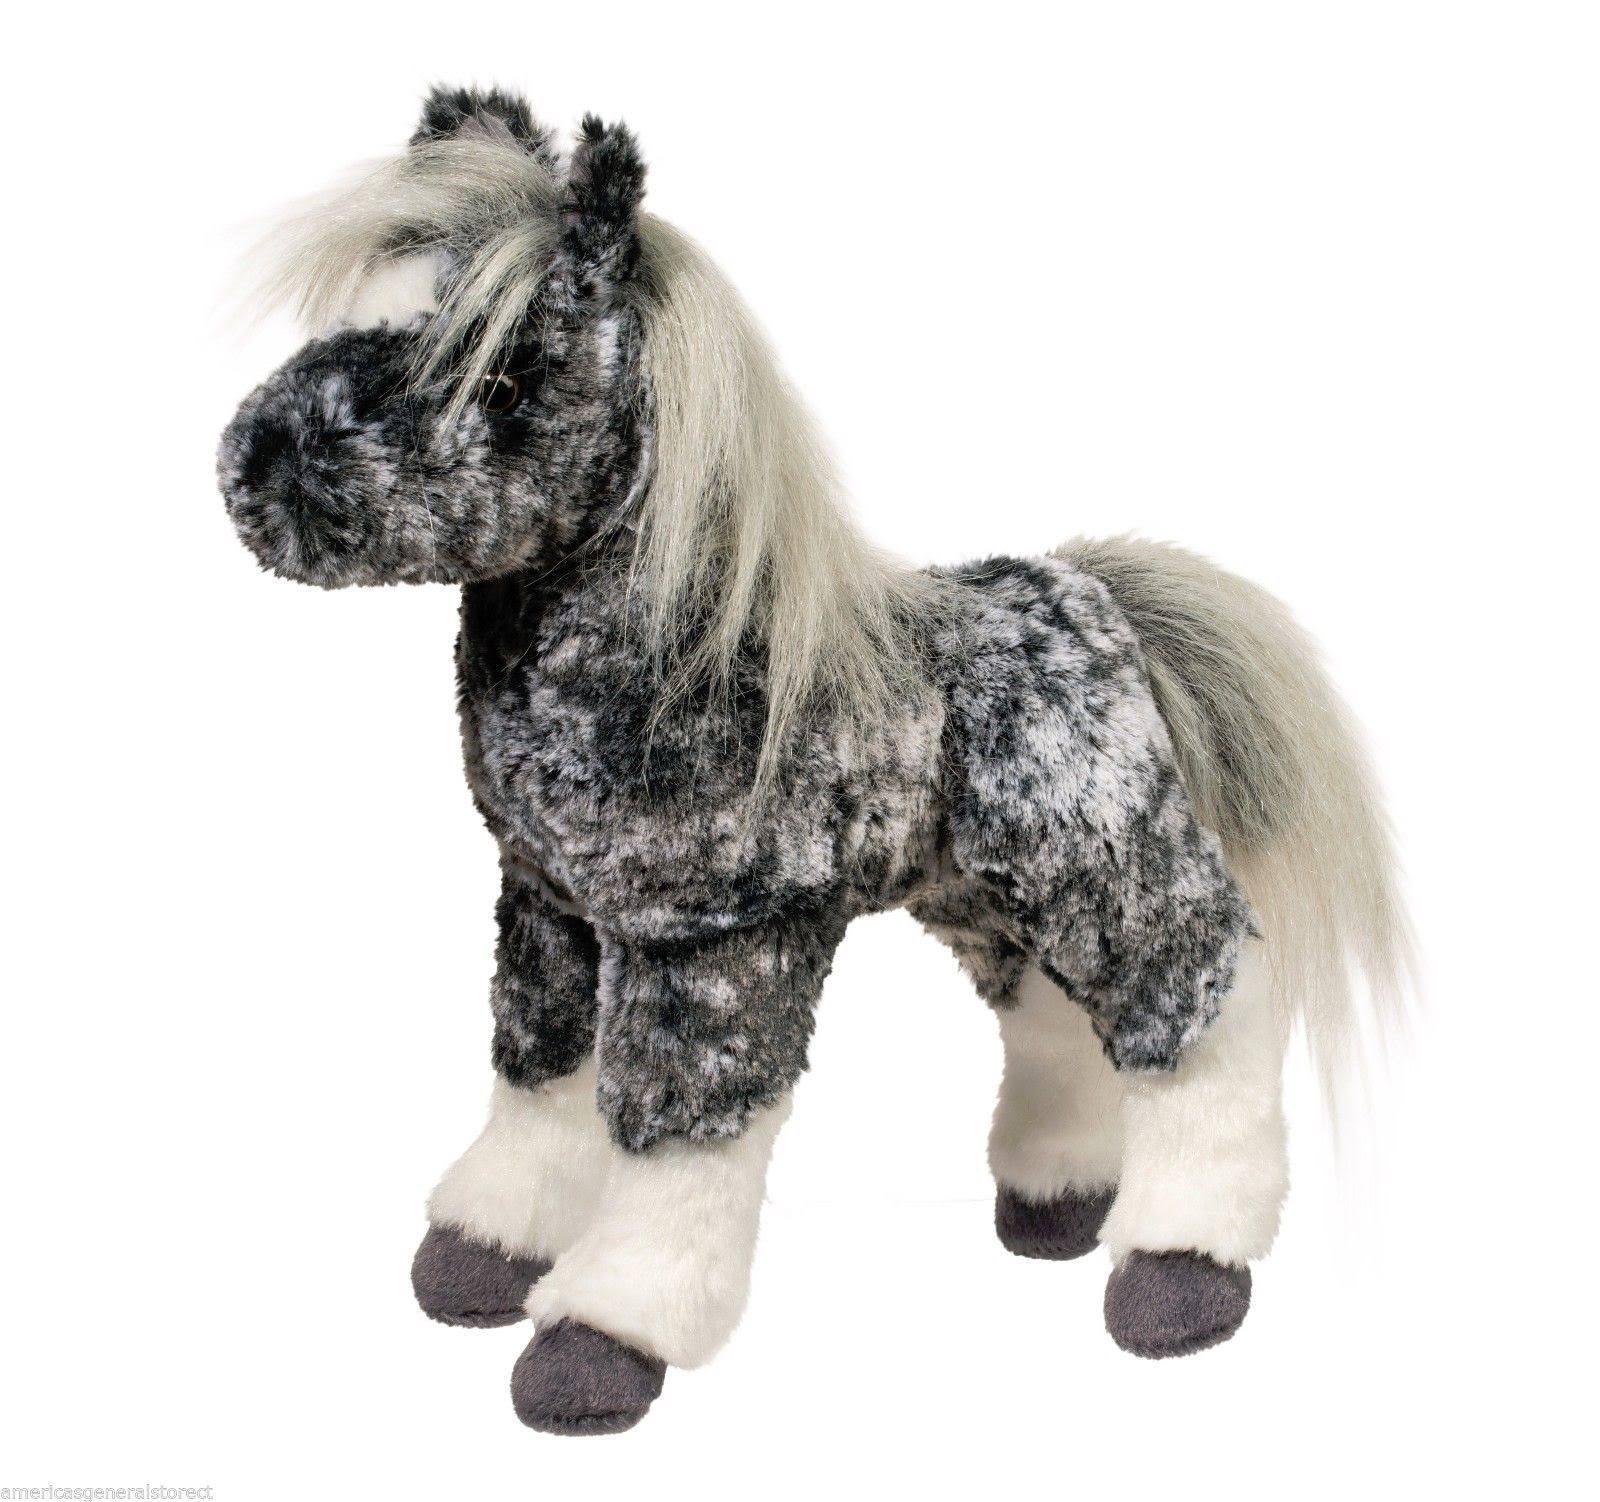 Douglas Plush Stuffed Horse Animal - Majestic Gray Dapple Foal, 10"